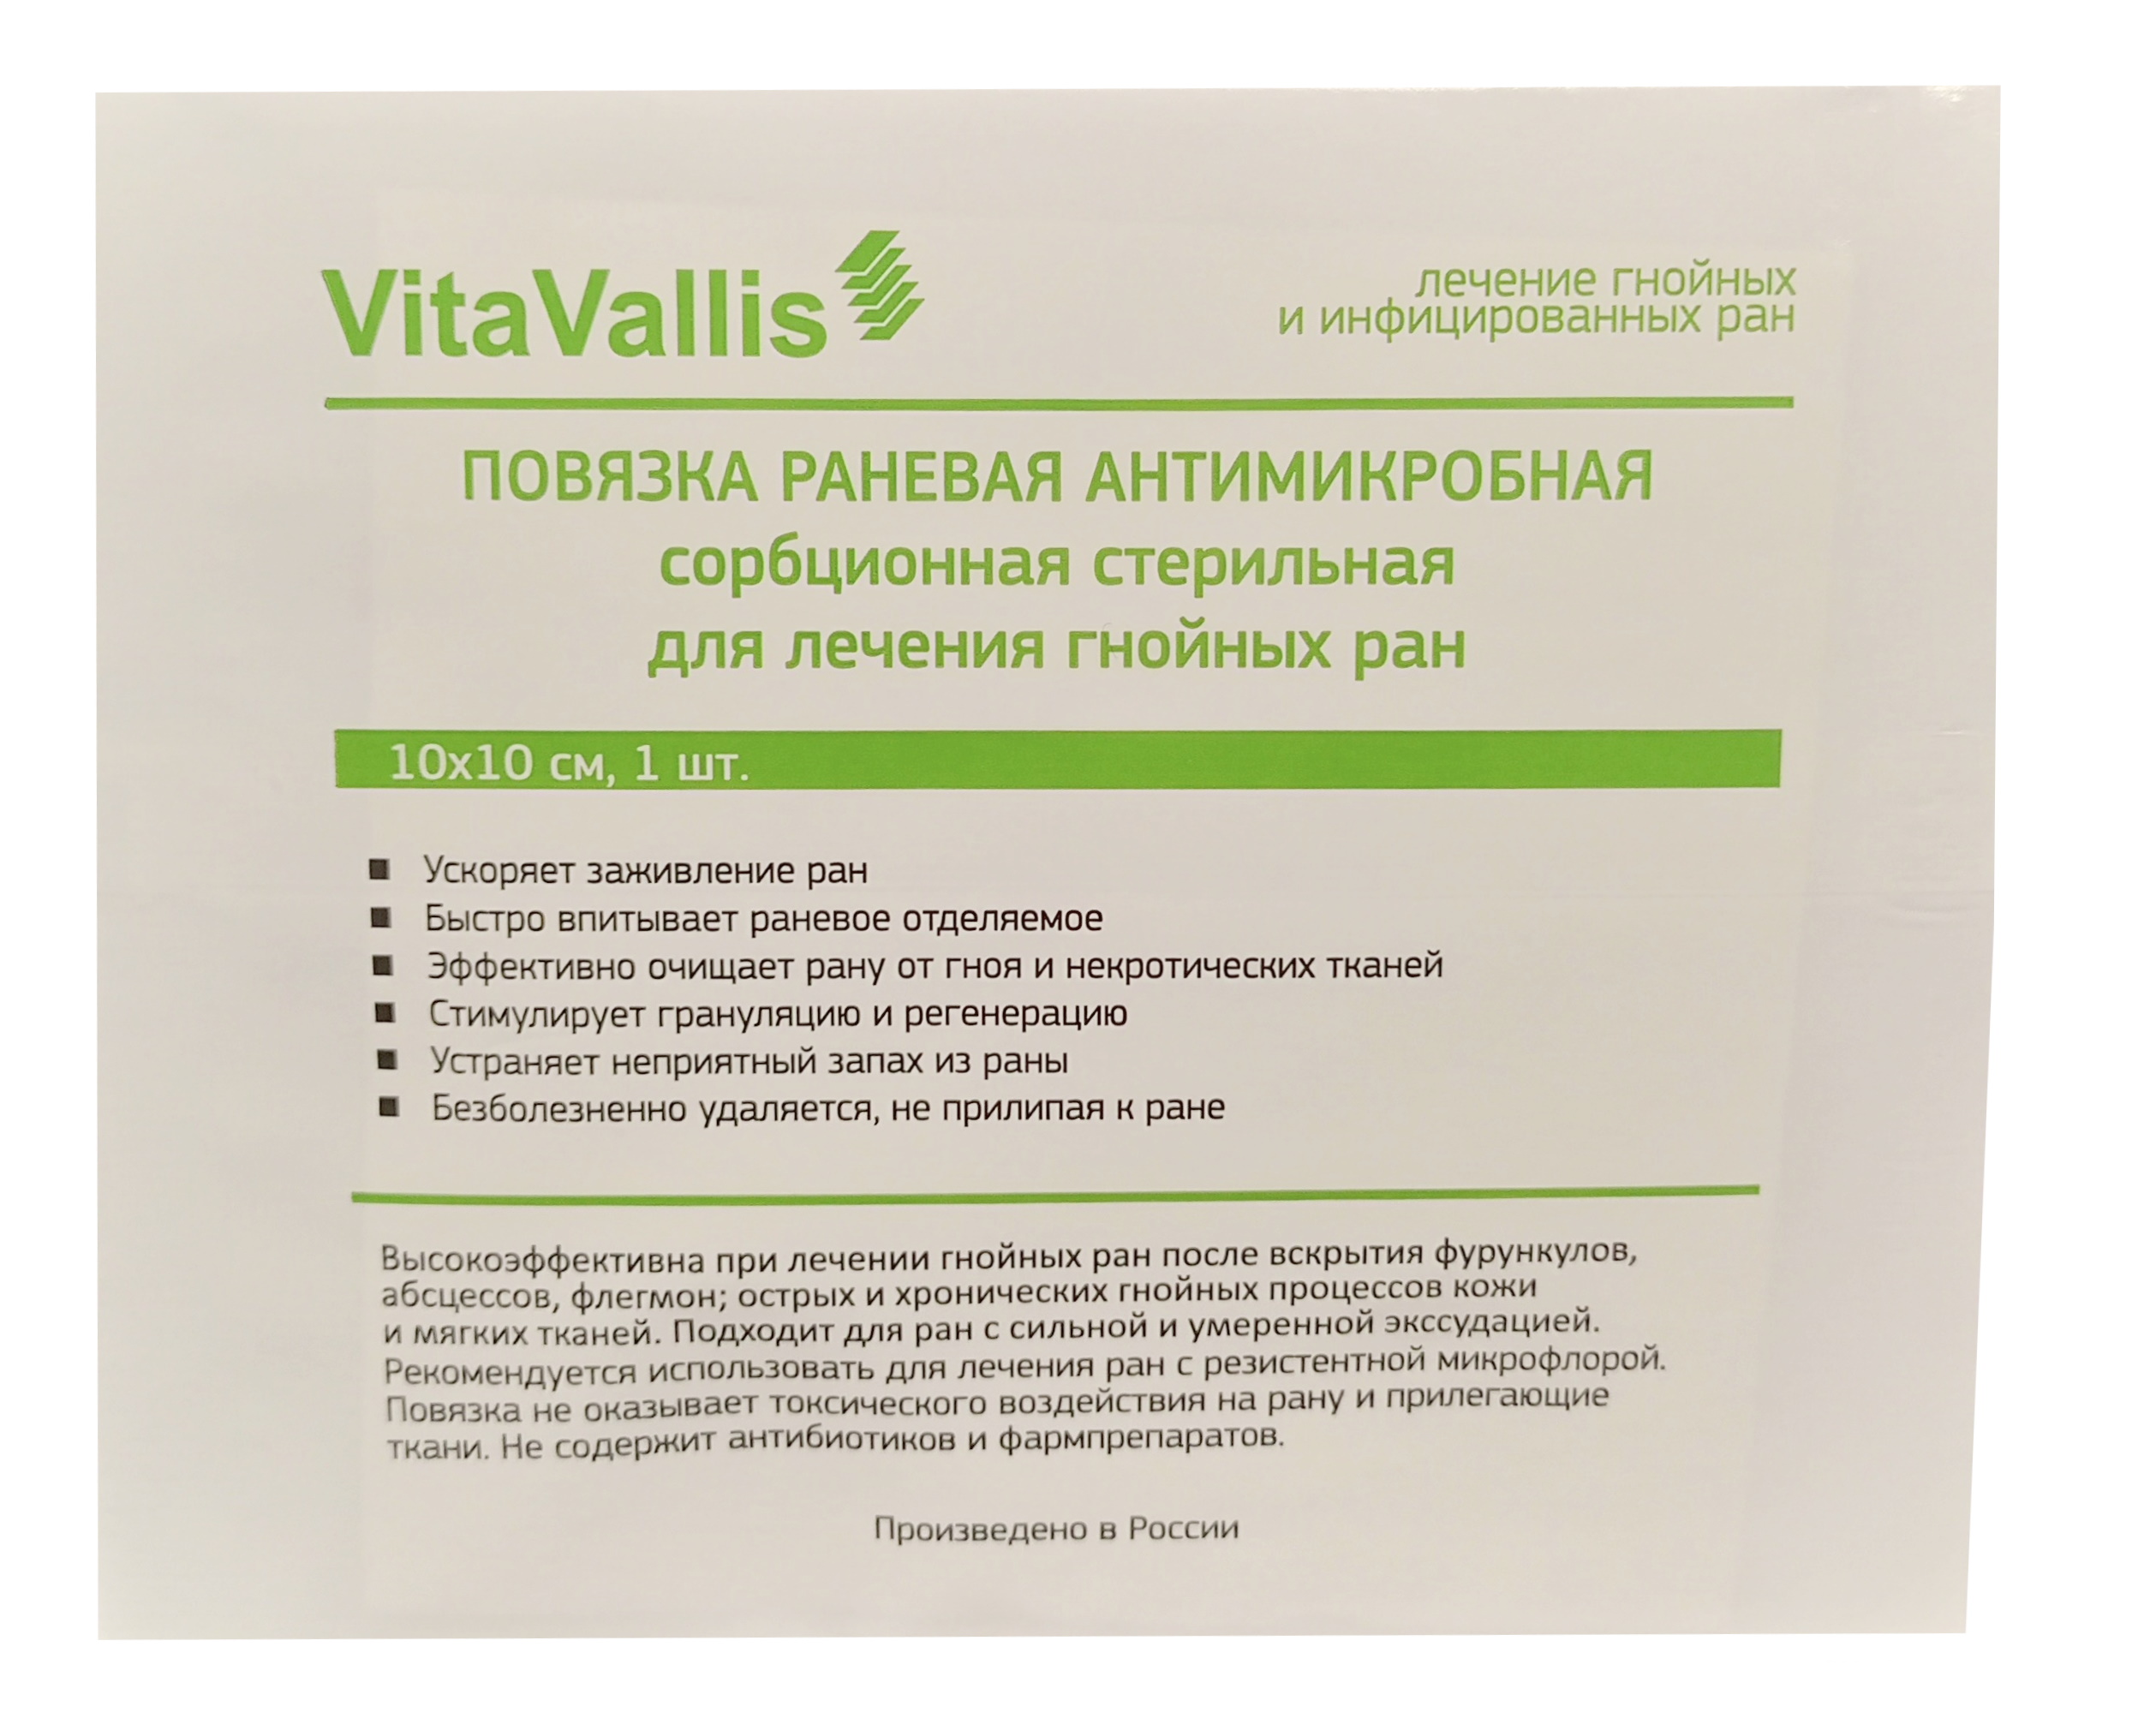 Купить Повязка раневая антимикробная сорбционная стерильная для лечения гнойных ран 10х10 см., VitaVallis